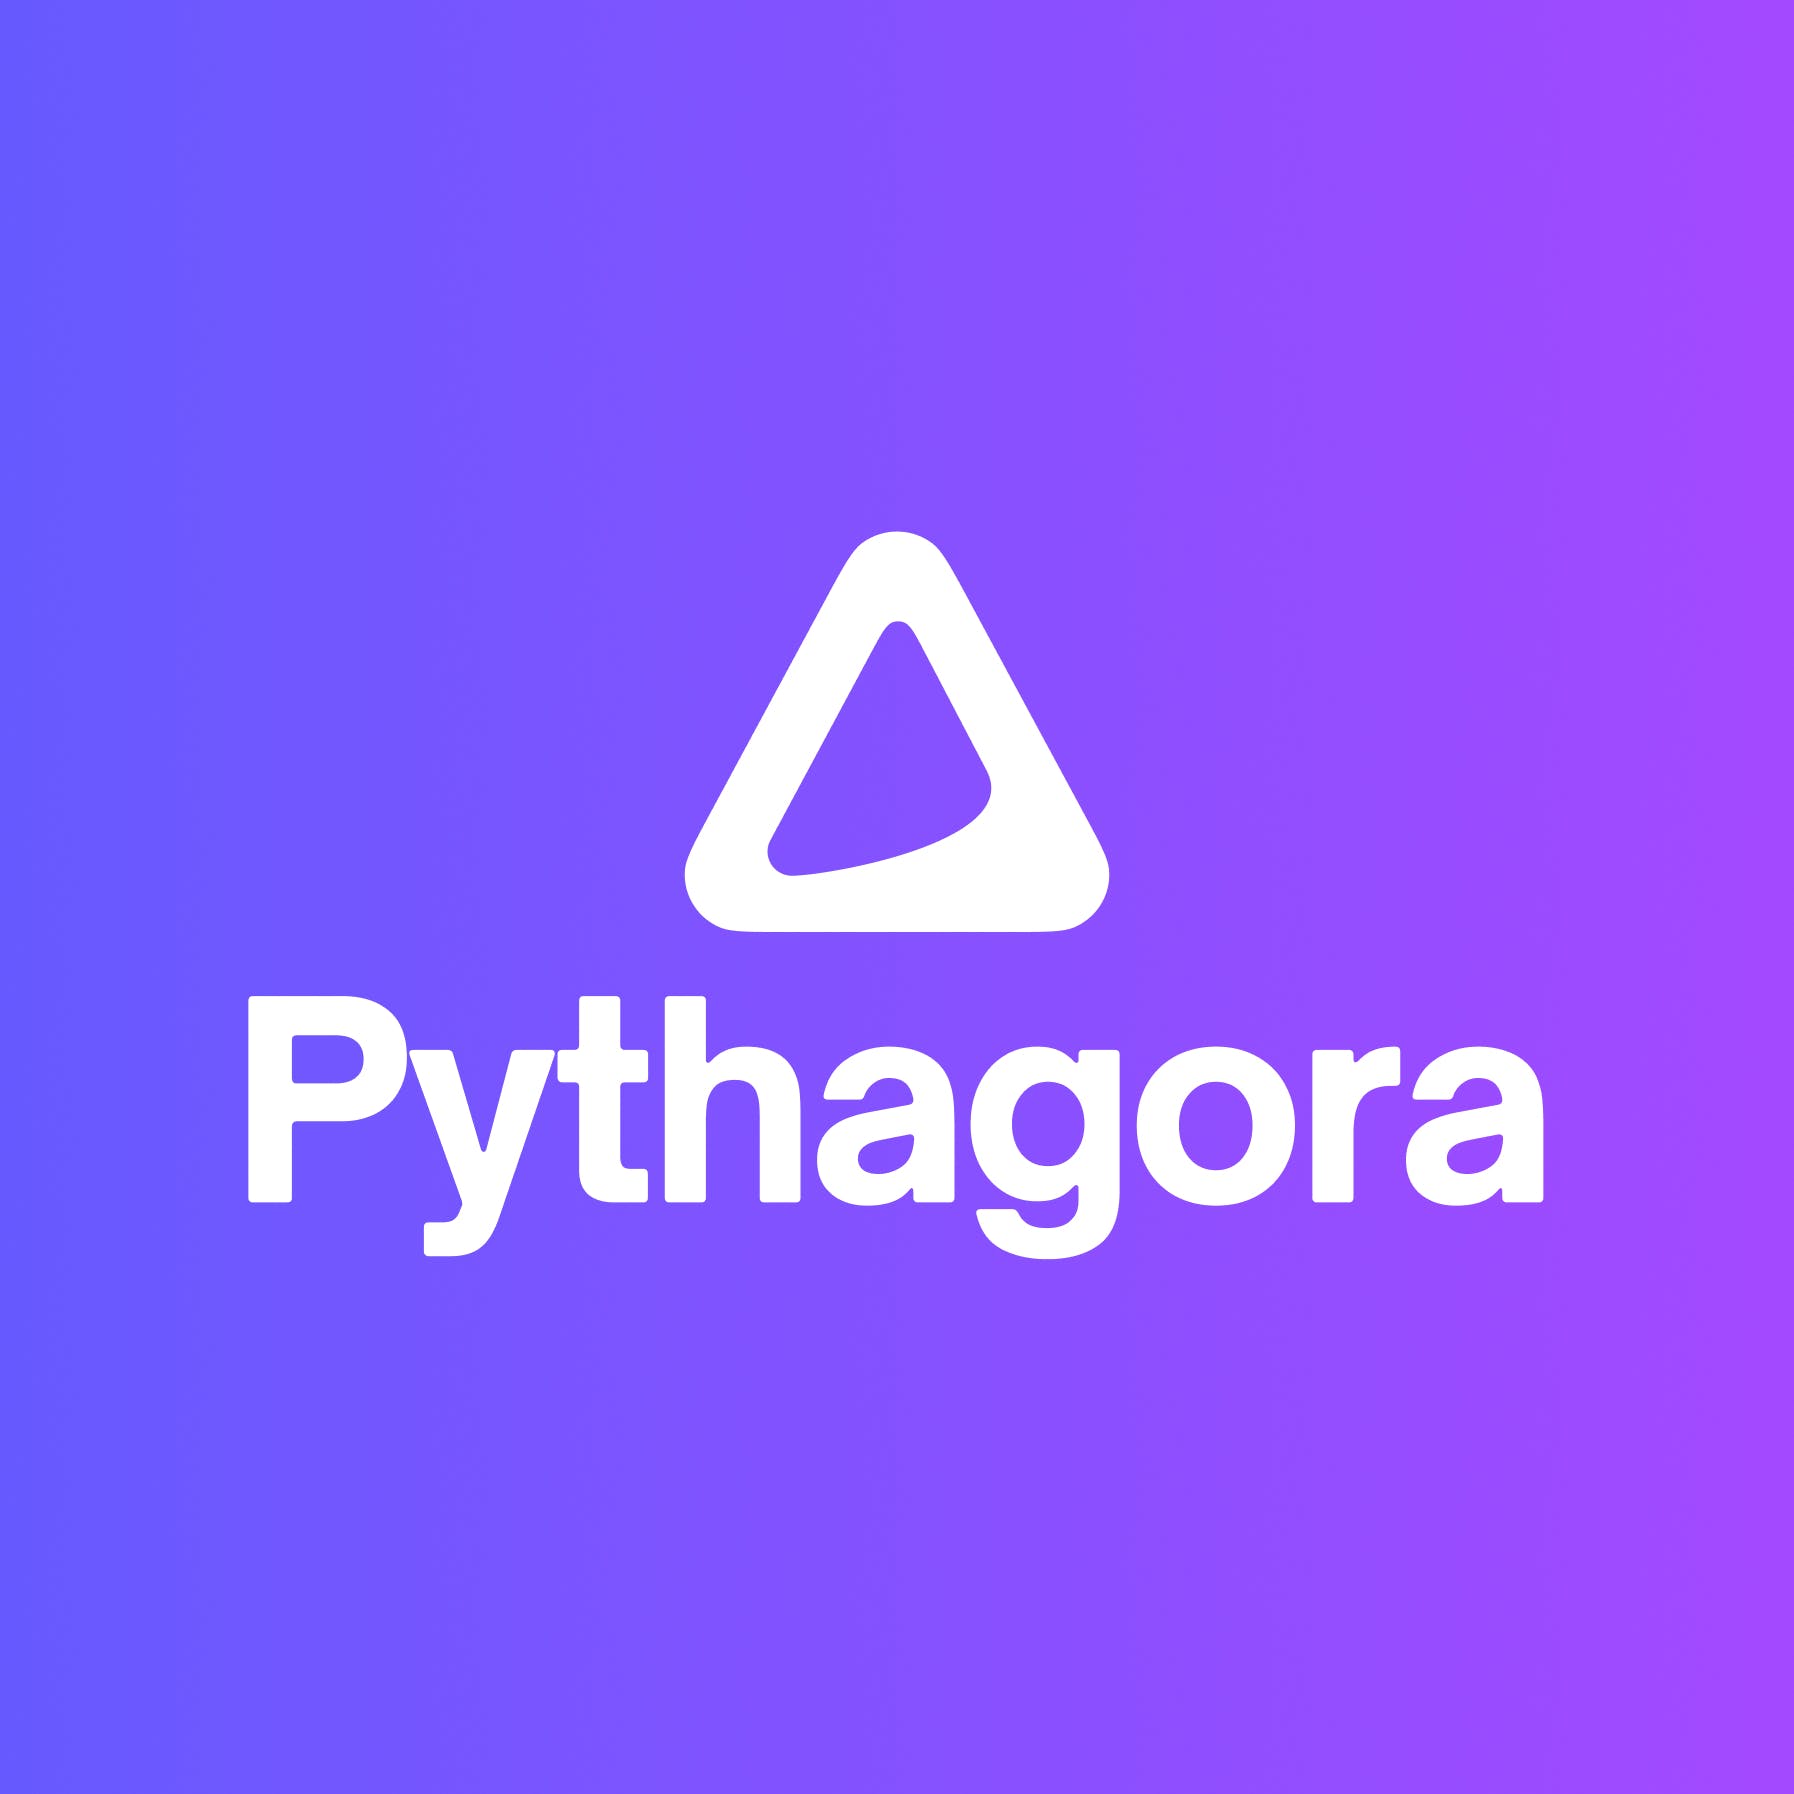 Pythagora media 1